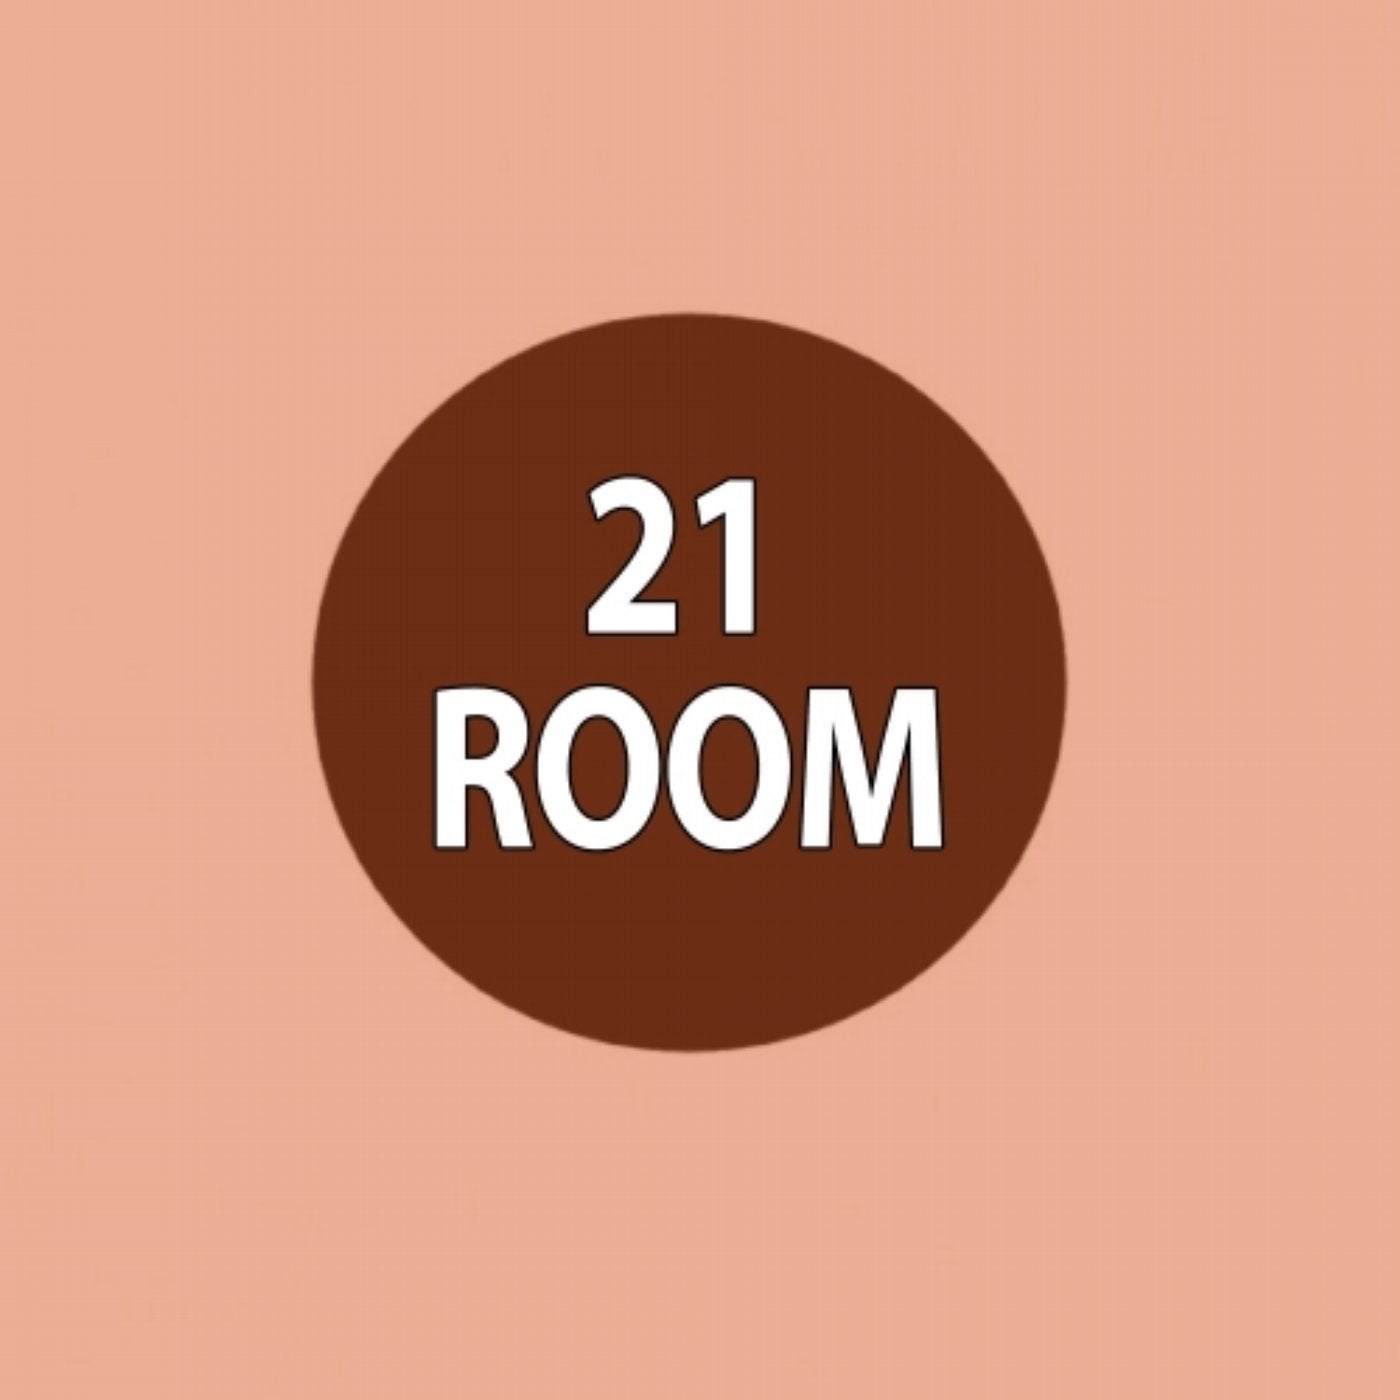 21 Room Acapellas